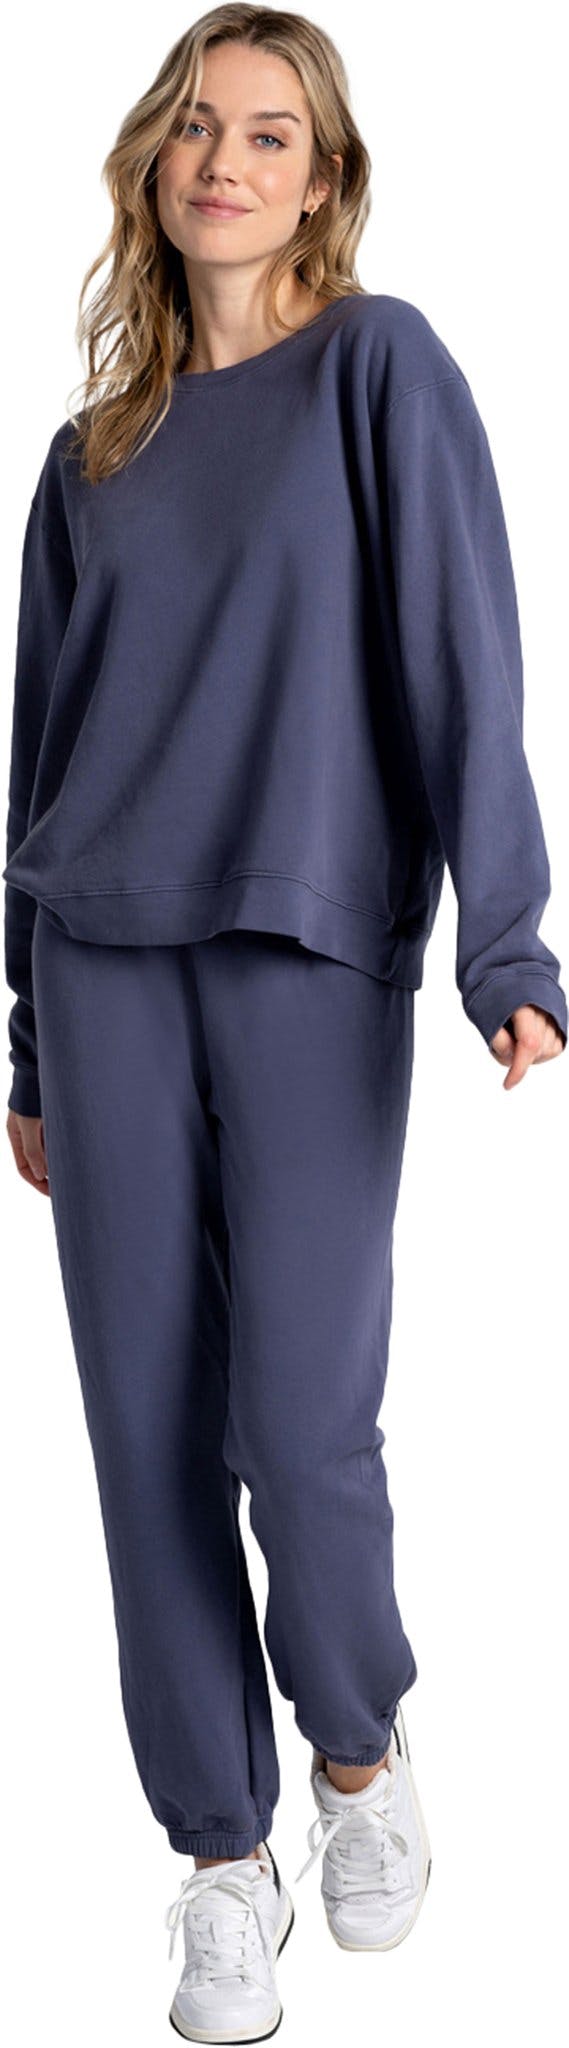 Numéro de l'image de la galerie de produits 1 pour le produit Pantalon de jogging en coton Lolë Edition - Femme